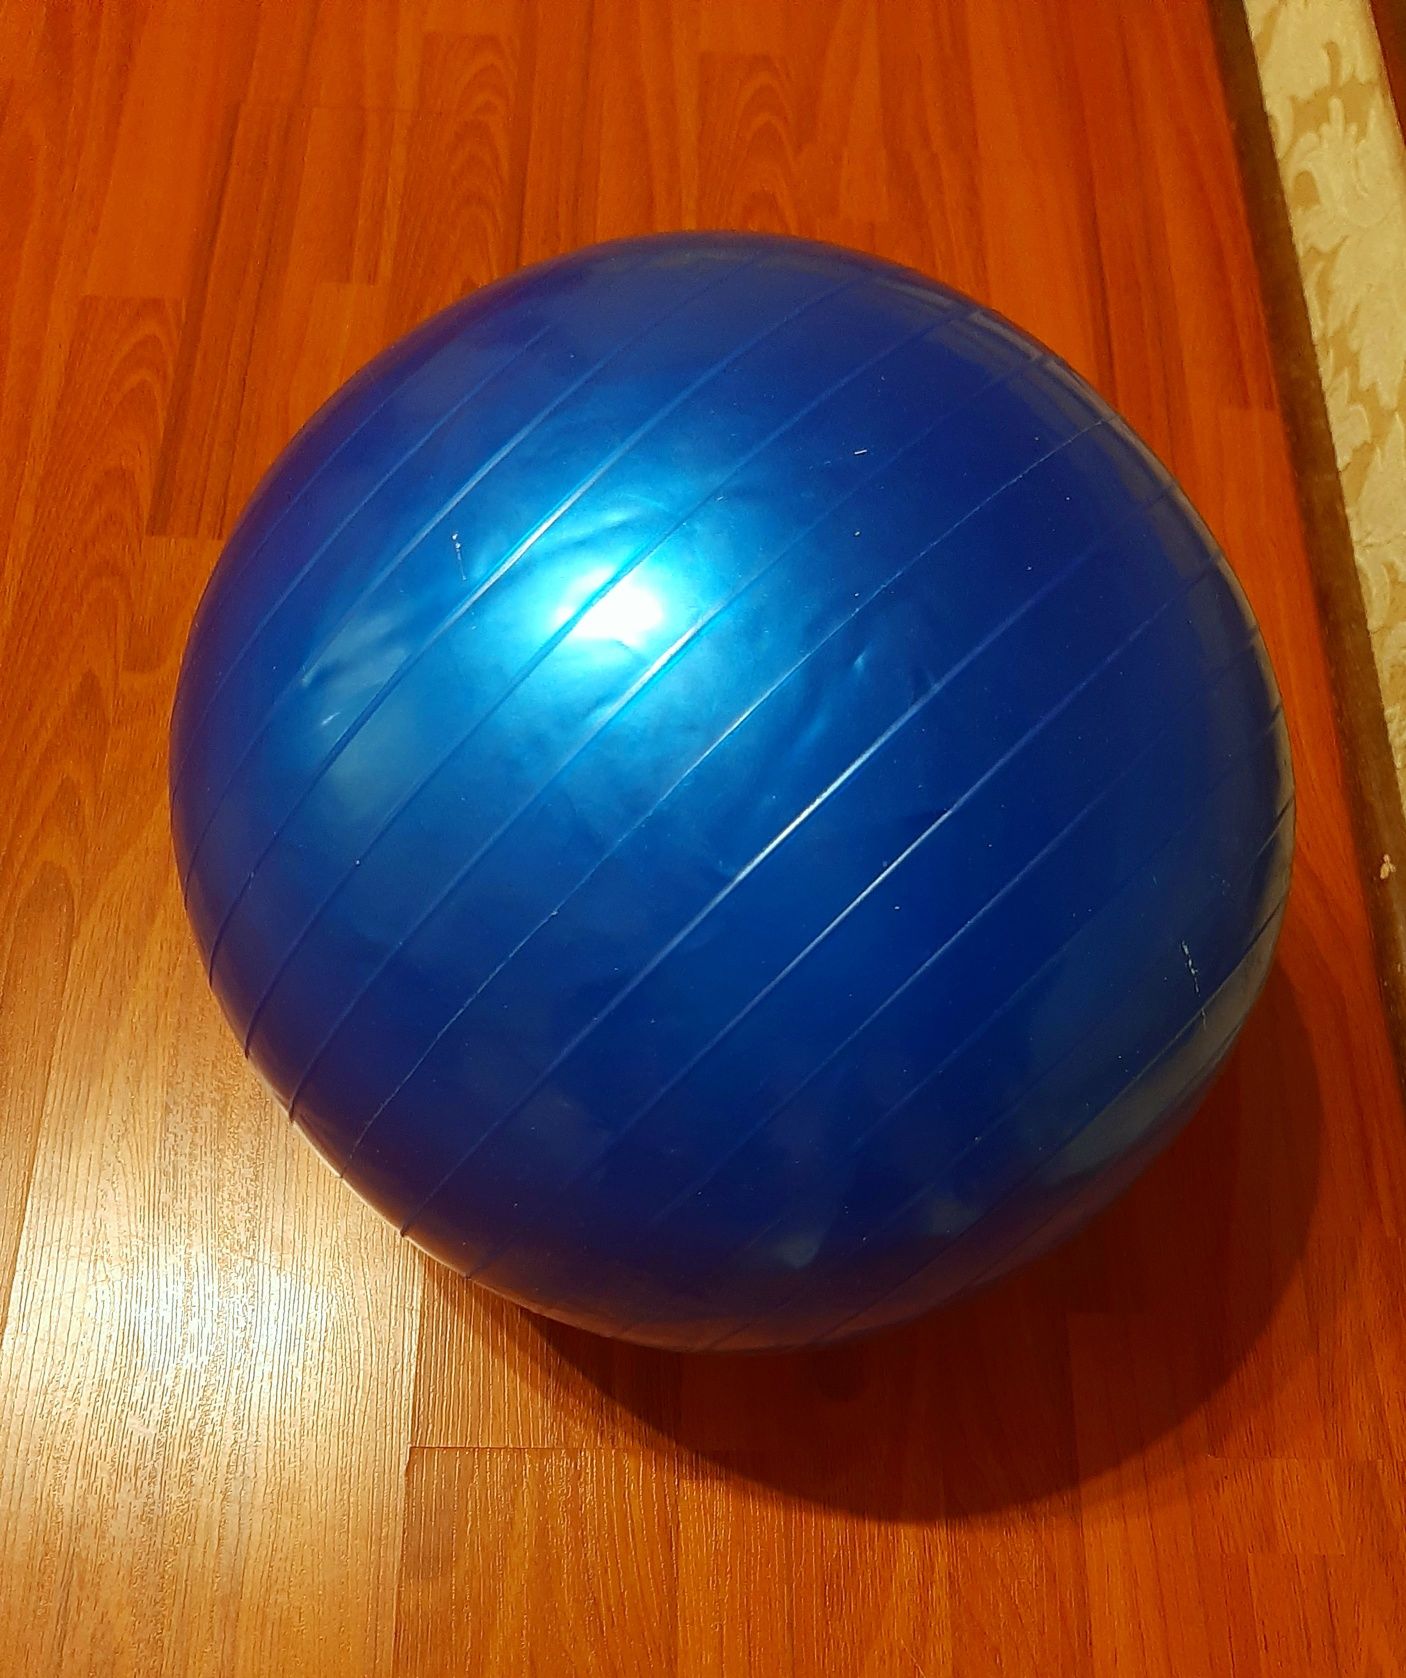 М'яч для фітнесу (фітбол), ms діаметр 60 см,синього кольору